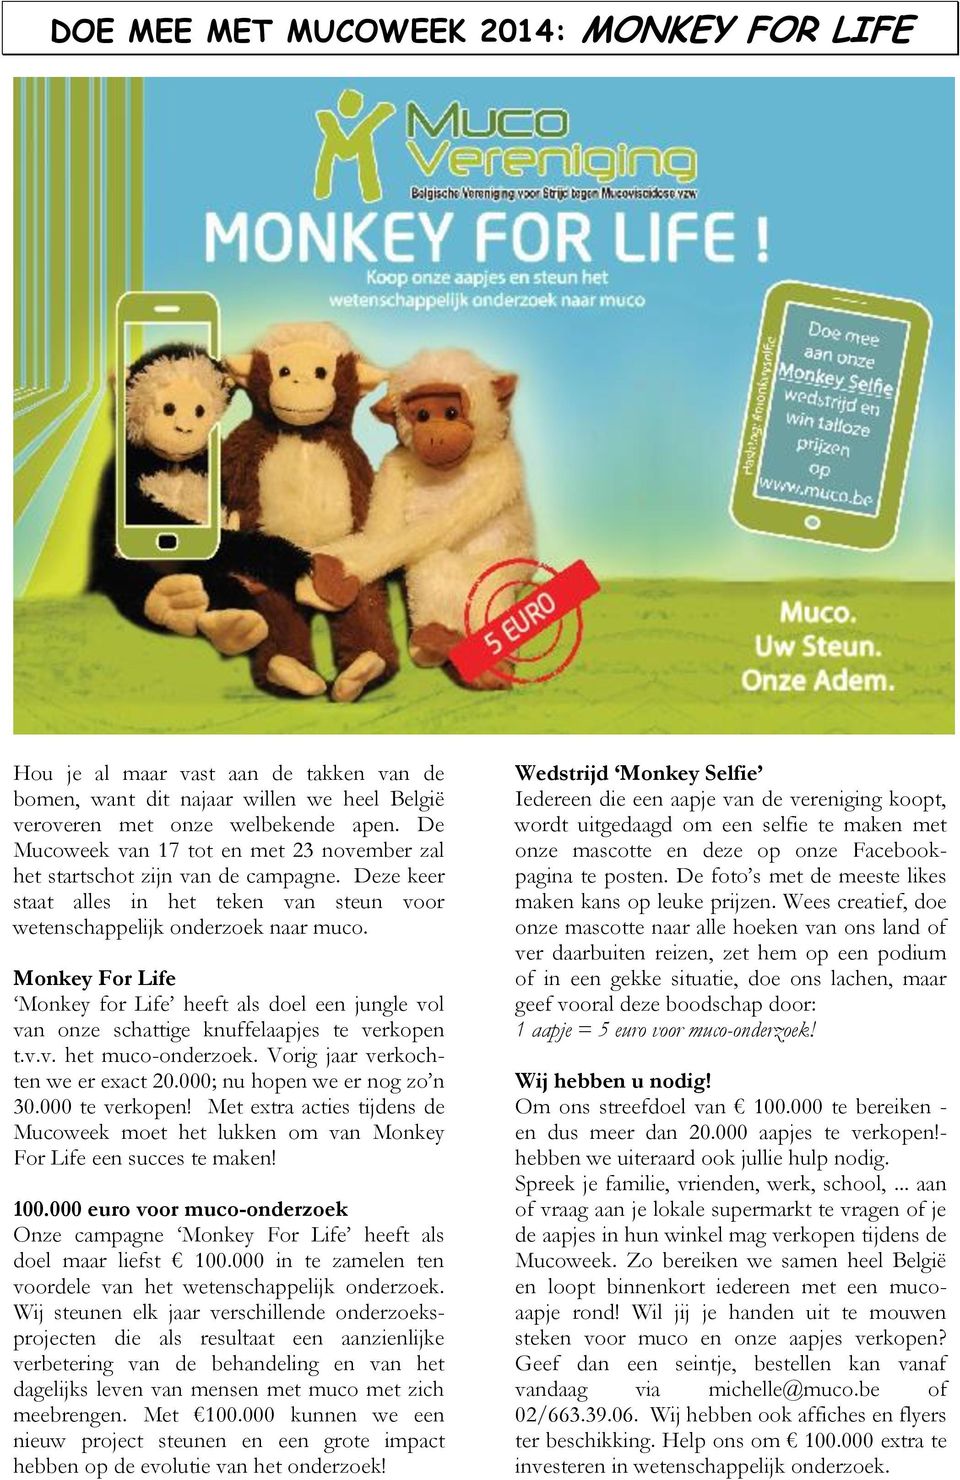 Monkey For Life Monkey for Life heeft als doel een jungle vol van onze schattige knuffelaapjes te verkopen t.v.v. het muco-onderzoek. Vorig jaar verkochten we er exact 20.